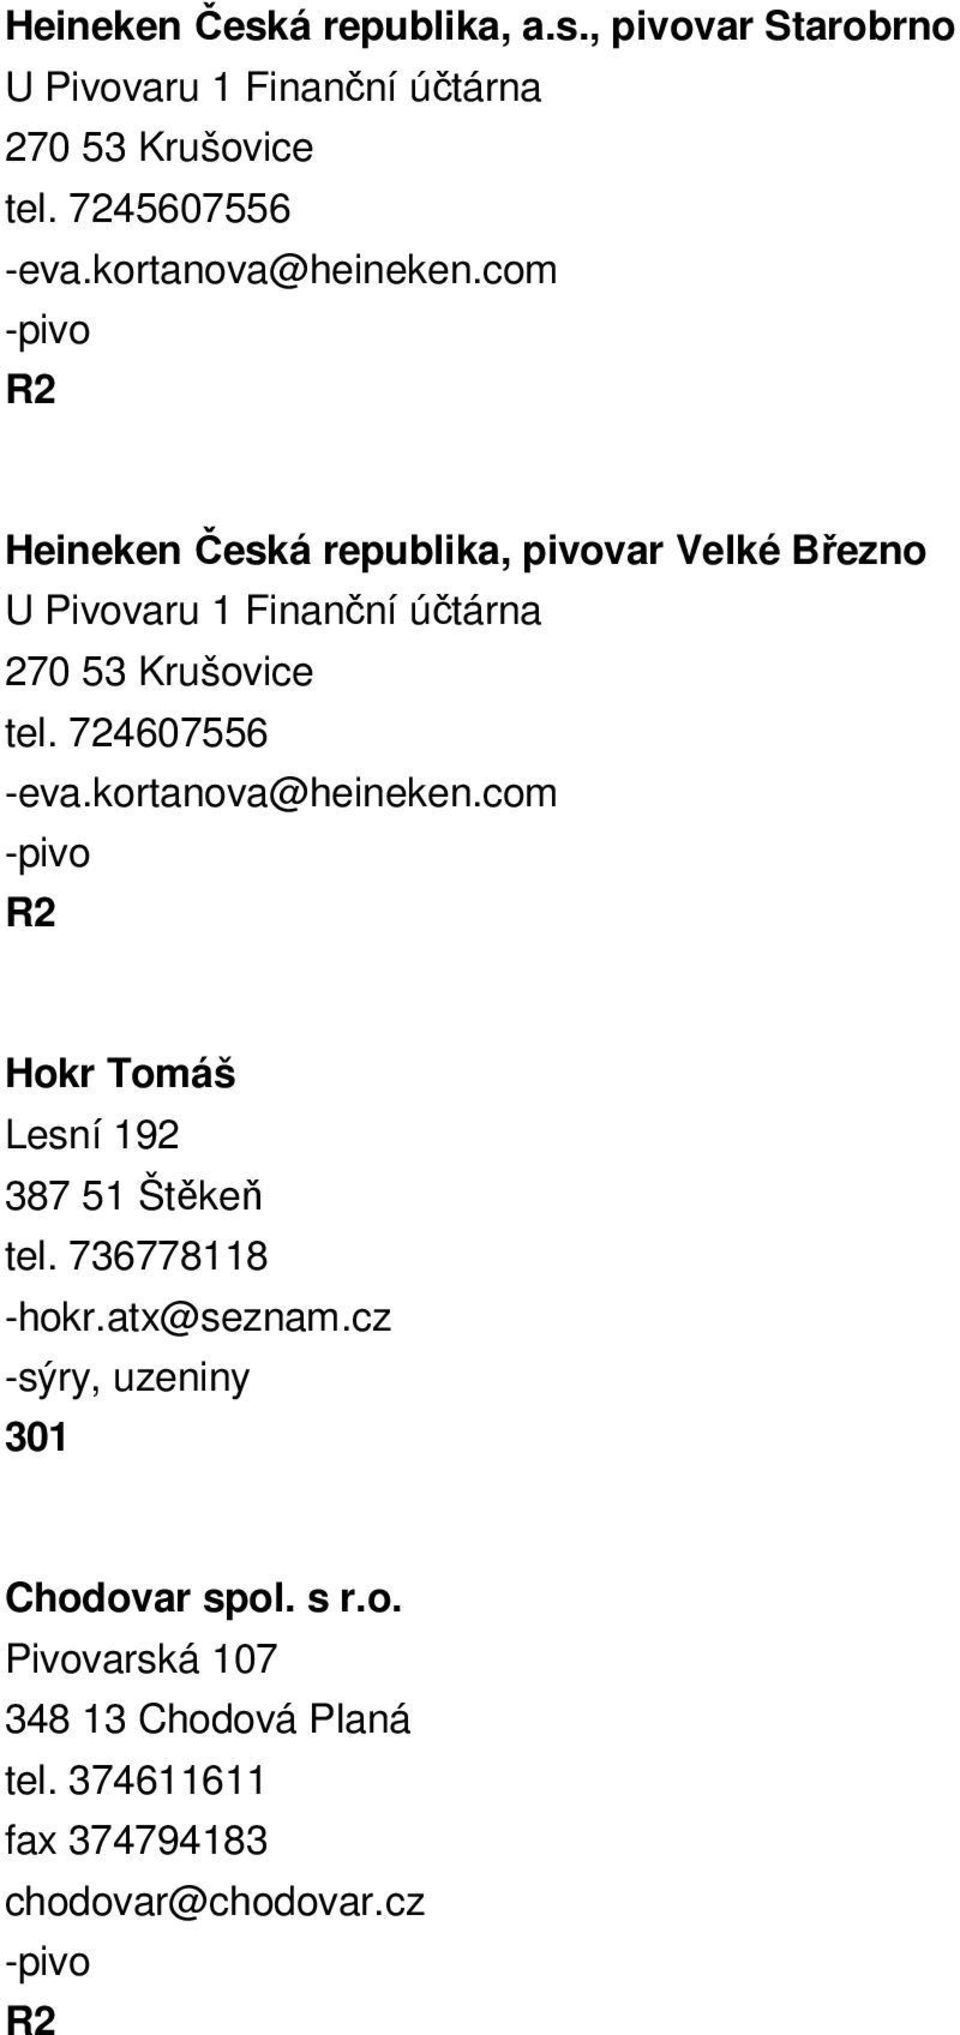 com - Heineken Česká republika, var Velké Březno U Pivovaru 1 Finanční účtárna 270 53 Krušovice tel. 724607556 -eva.